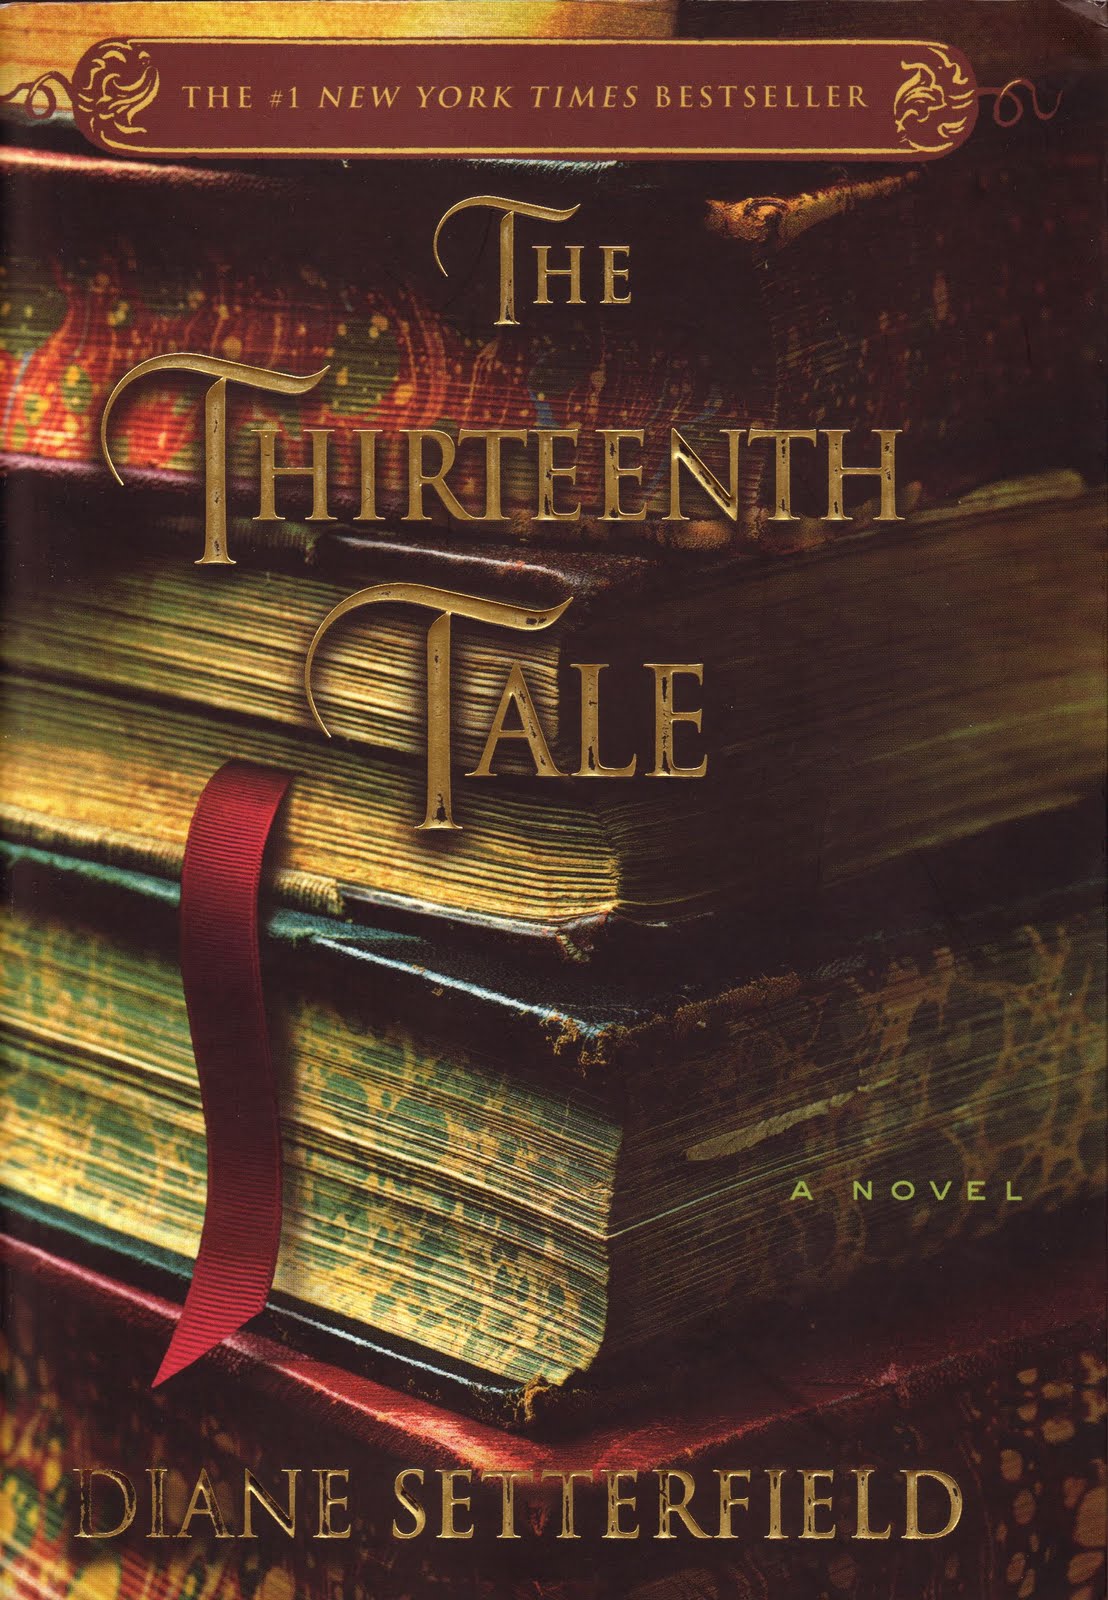 Thirteenth Tale By Diane Setterfield